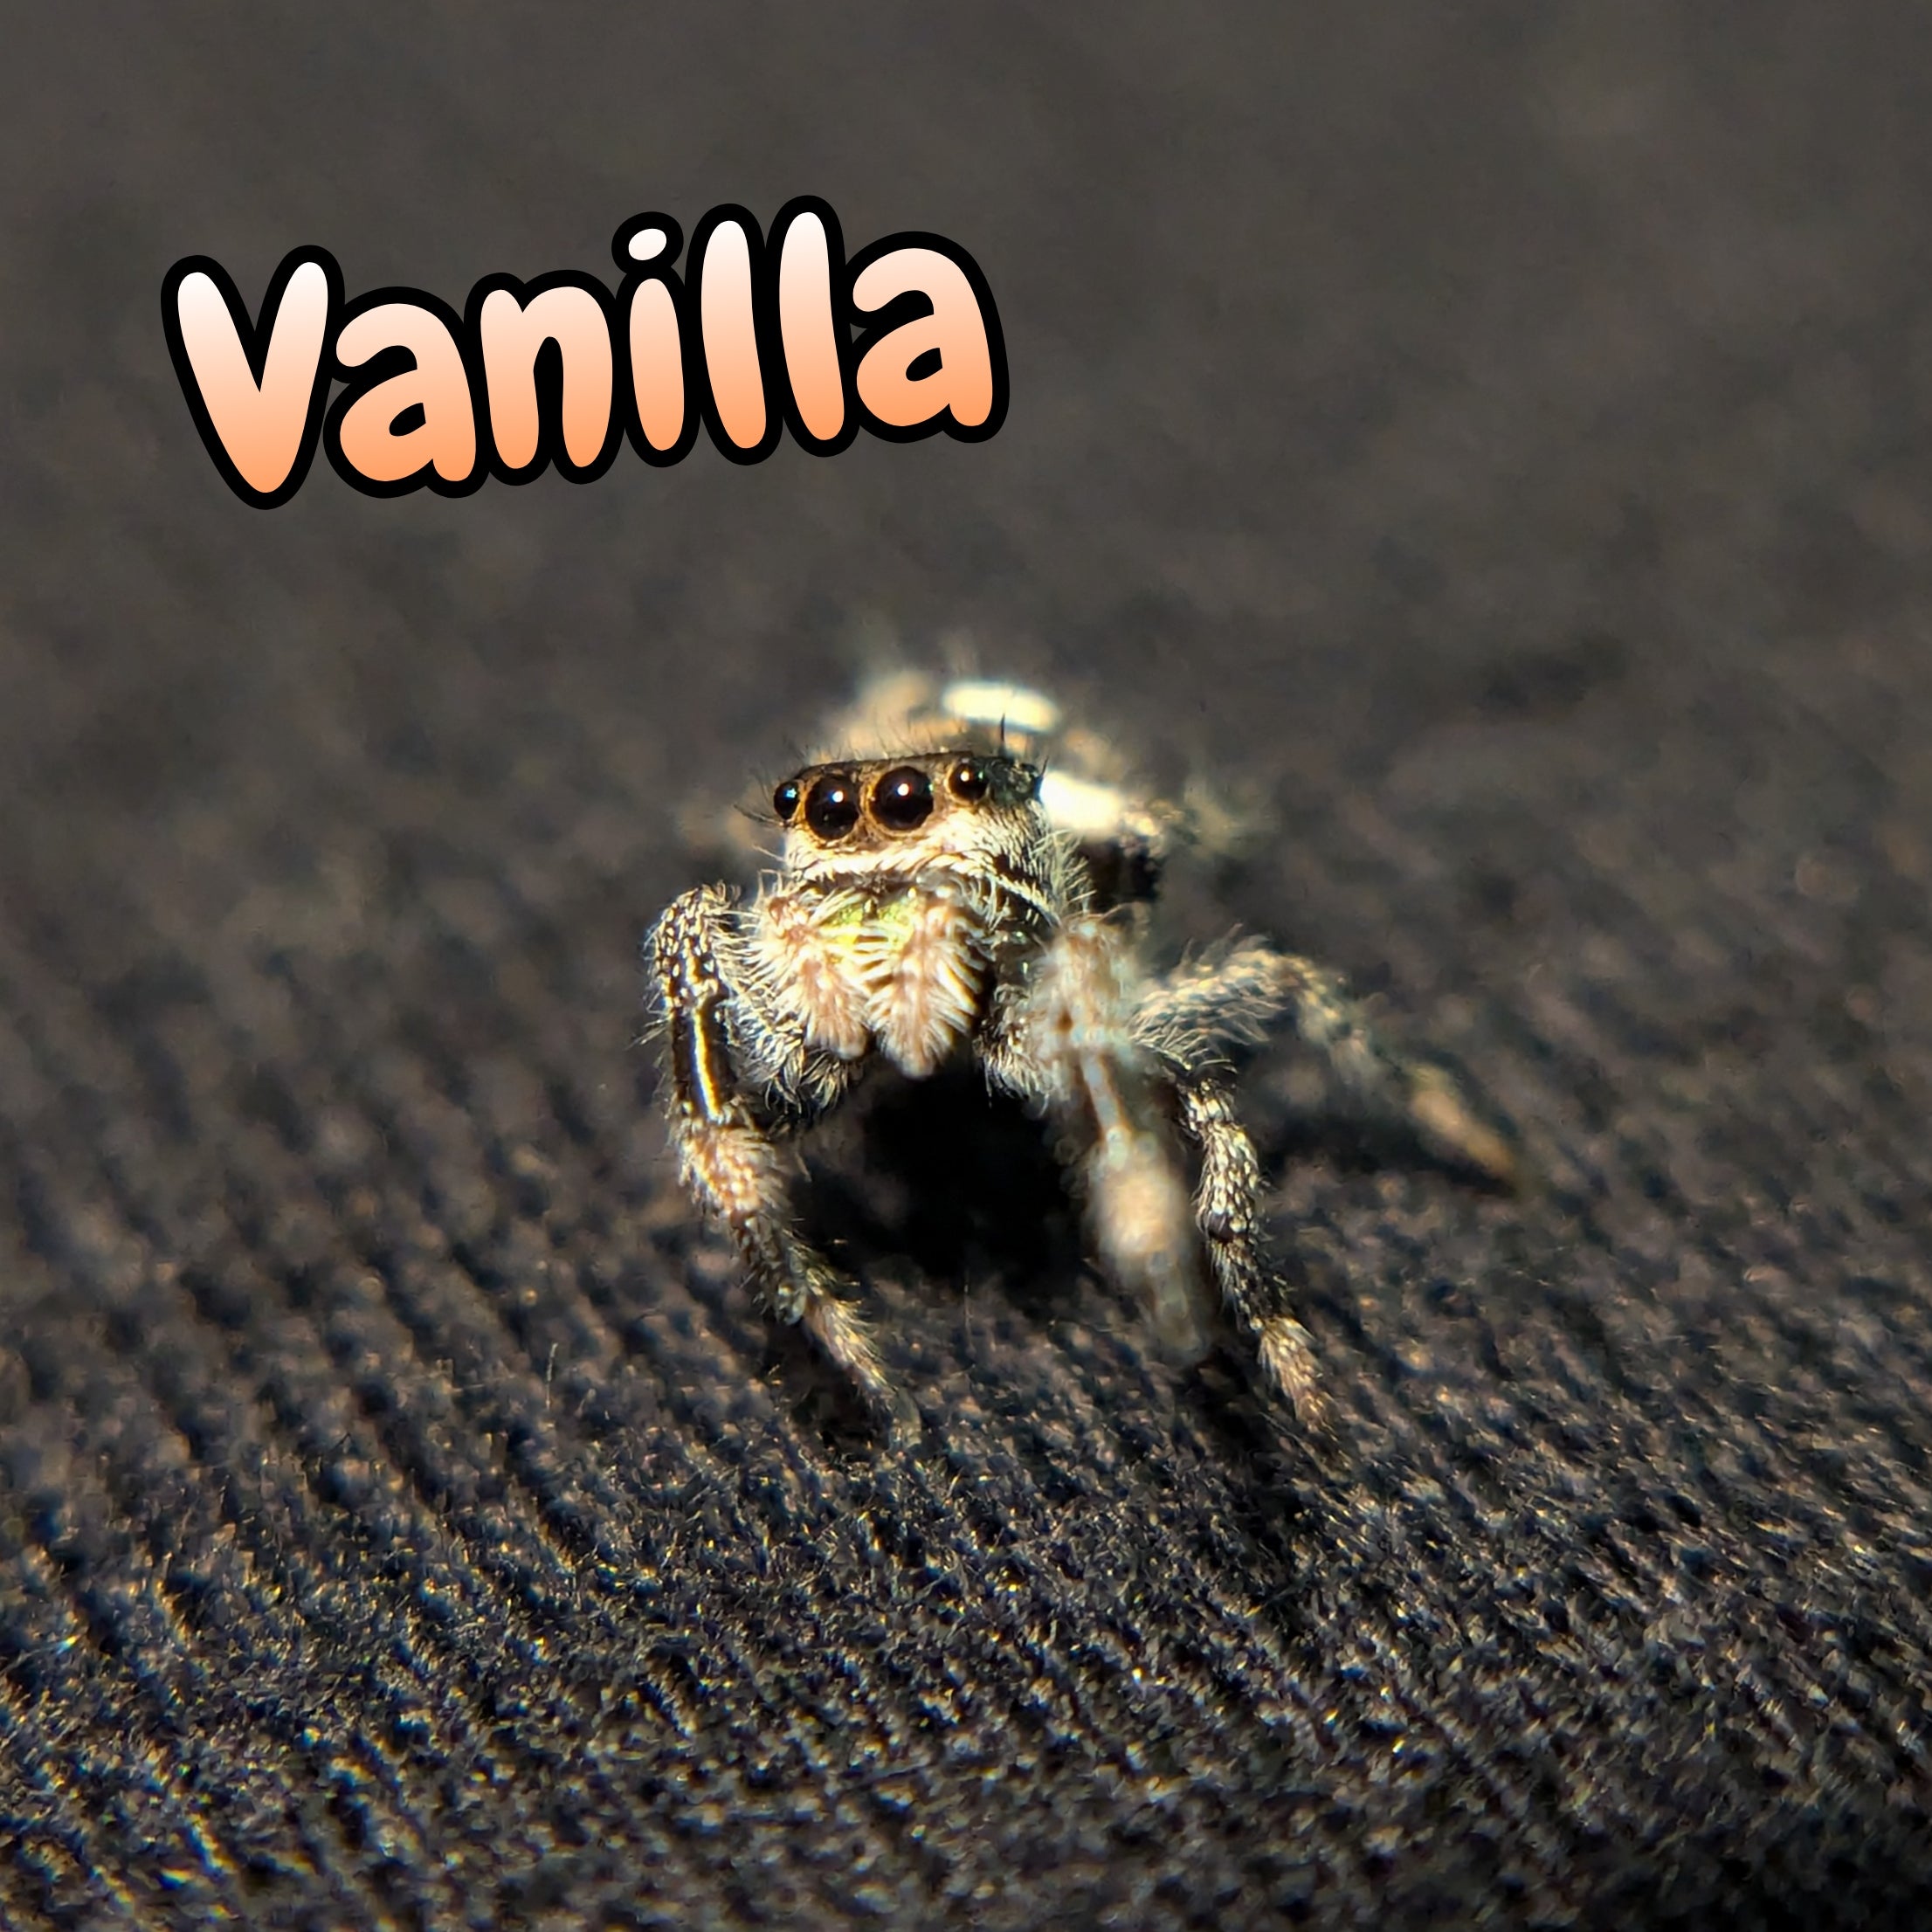 Regal Jumping Spider "Vanilla"